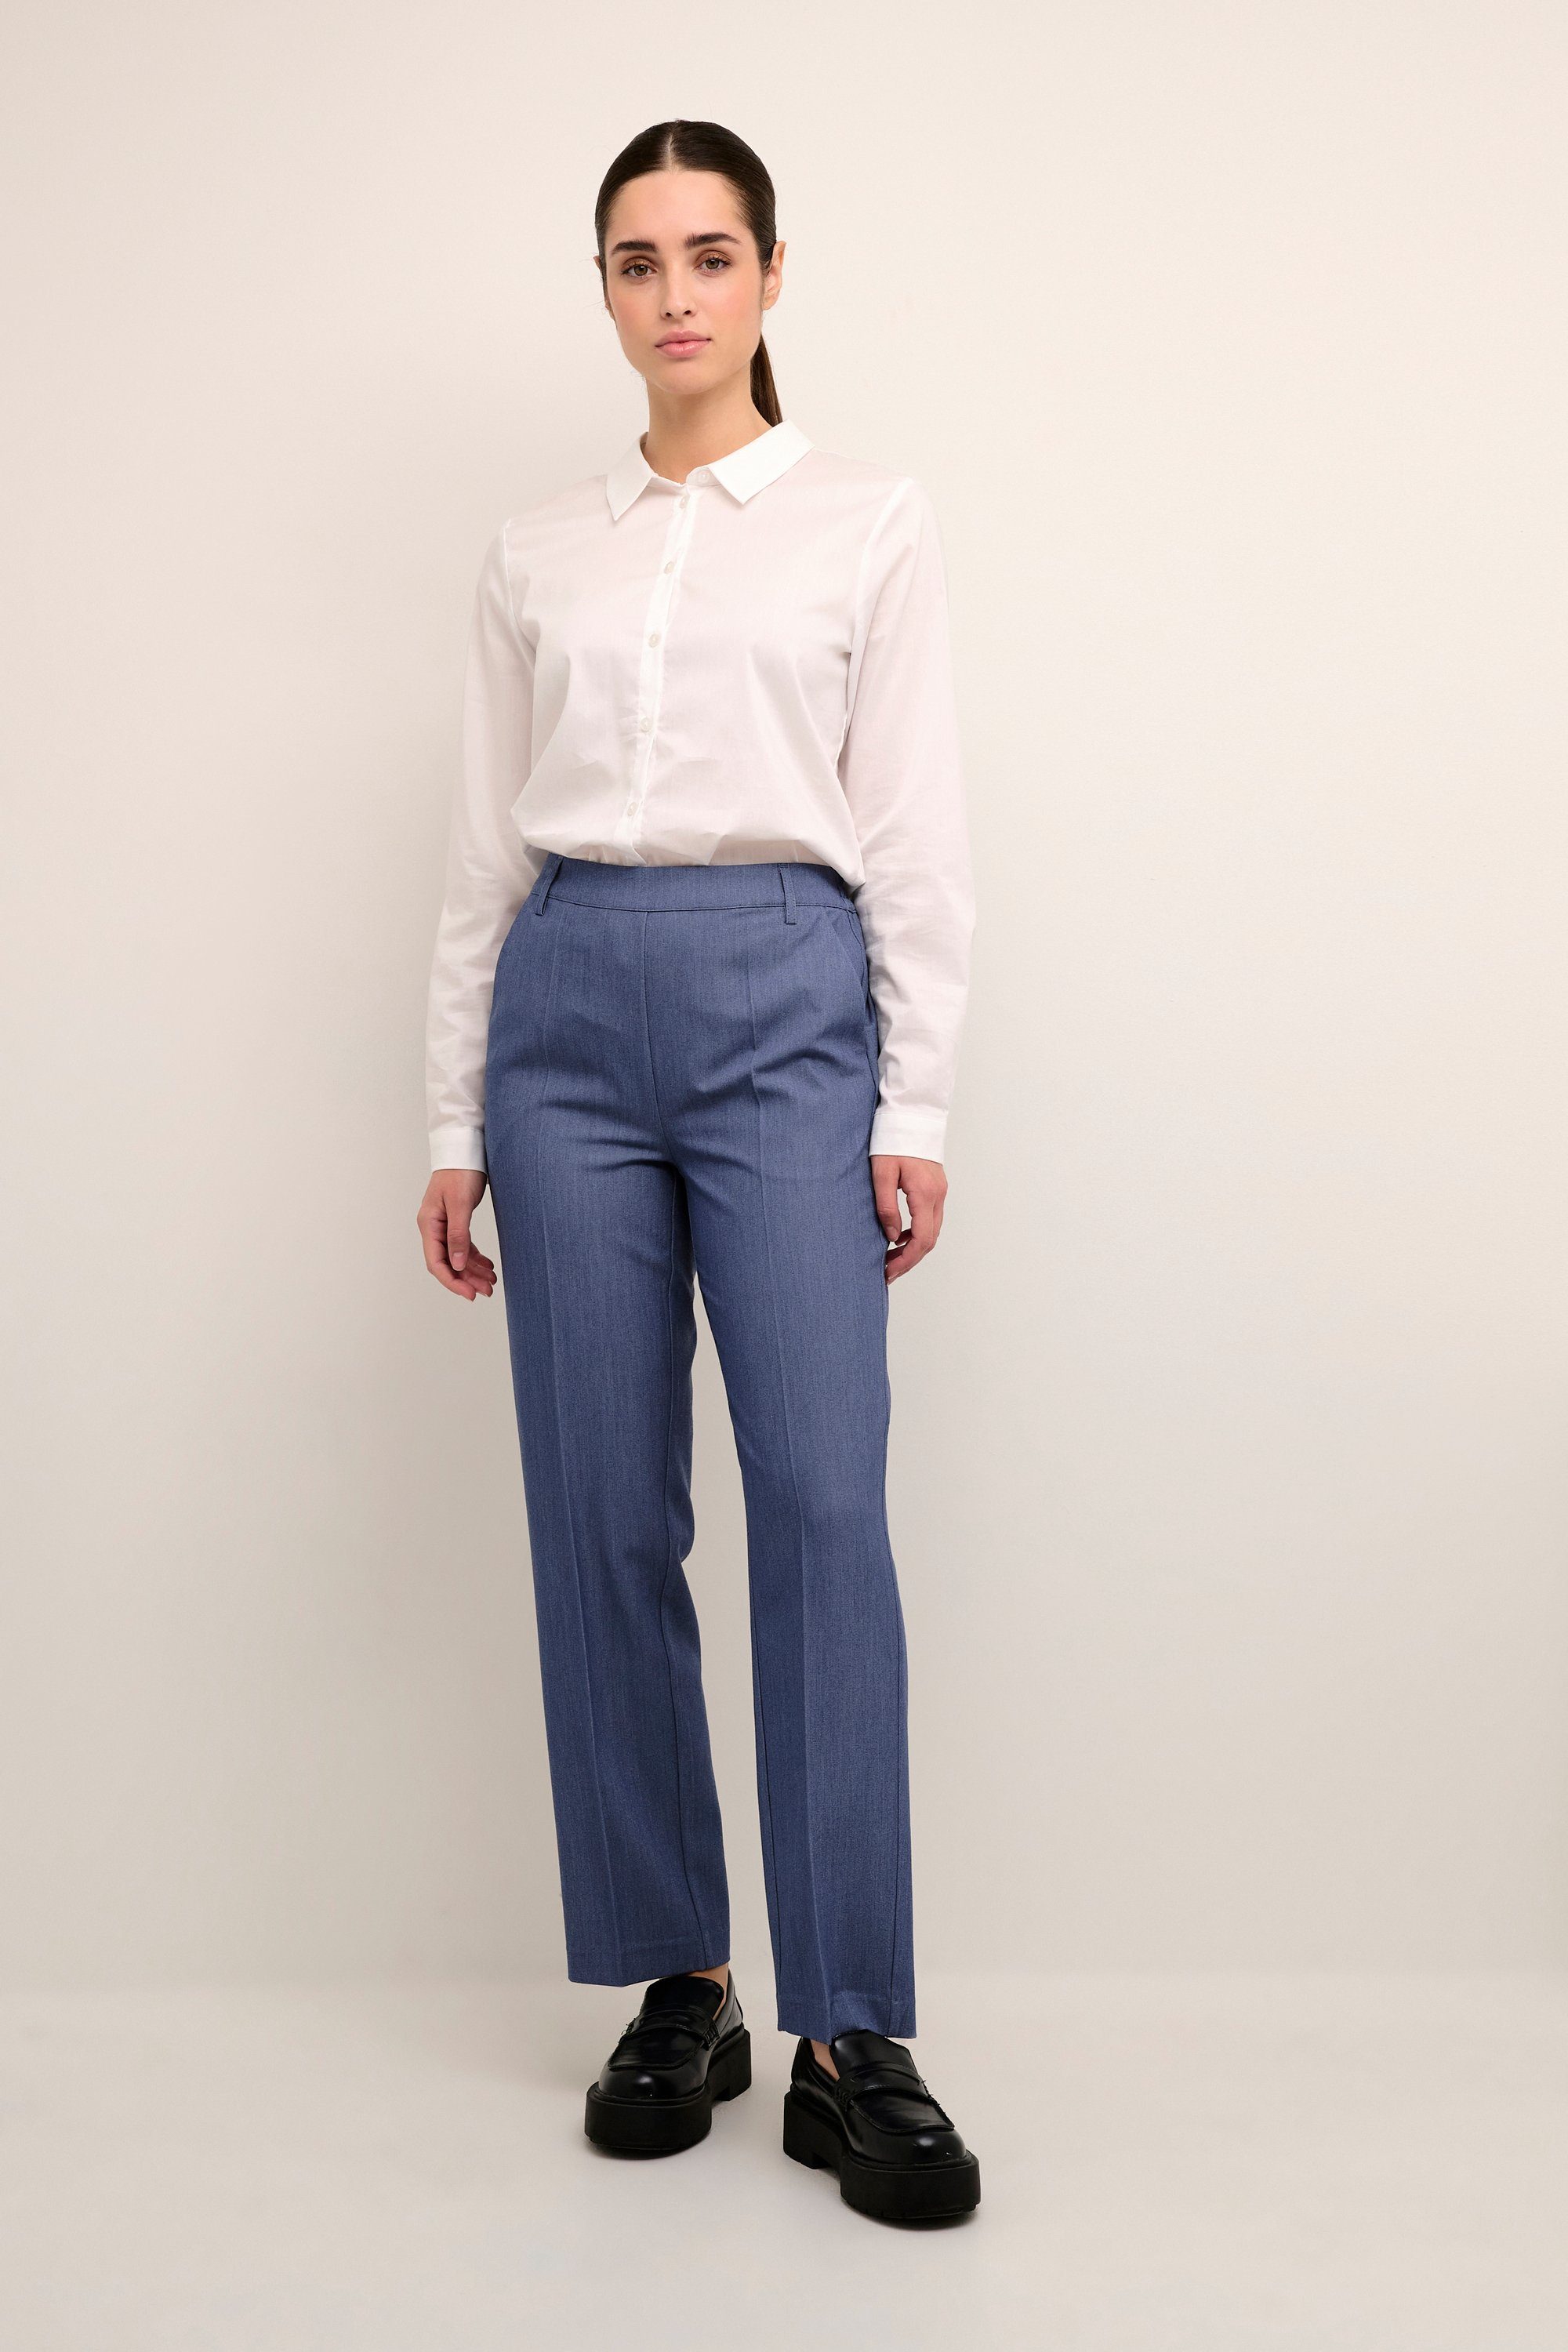 KAFFE Vintage Pants Indigo KAsakura Anzughose Suiting